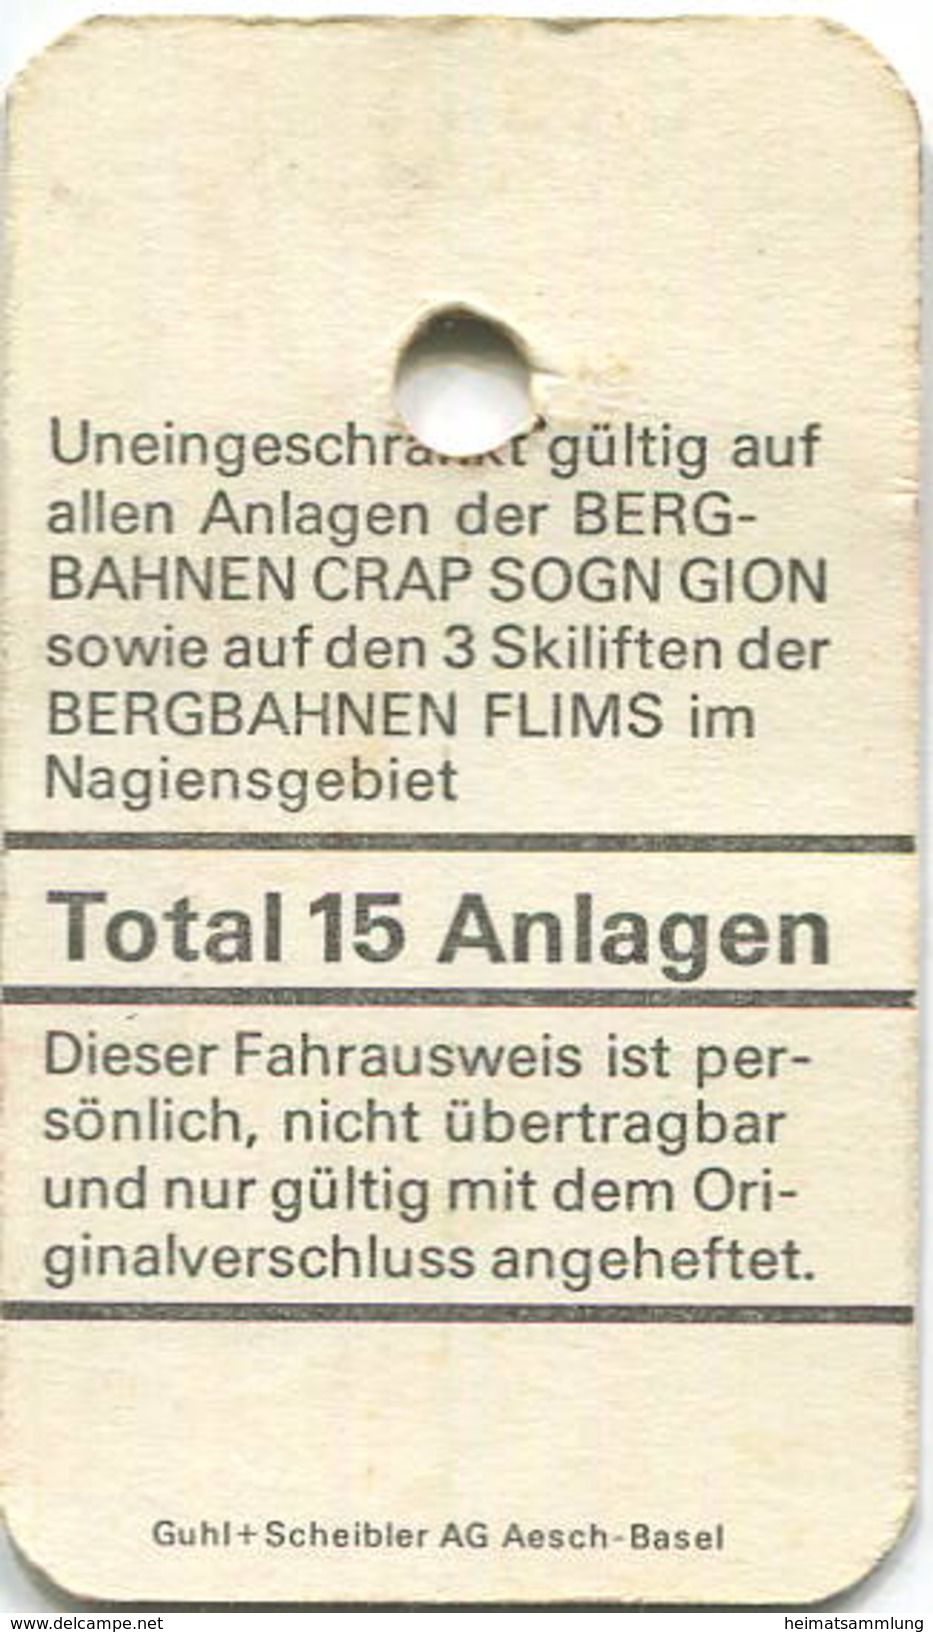 Schweiz - Crap Sogn Gion - Bergbahnen Und Skilifte Im Nagiensgebiet 1974 - Kinderkarte - Europa